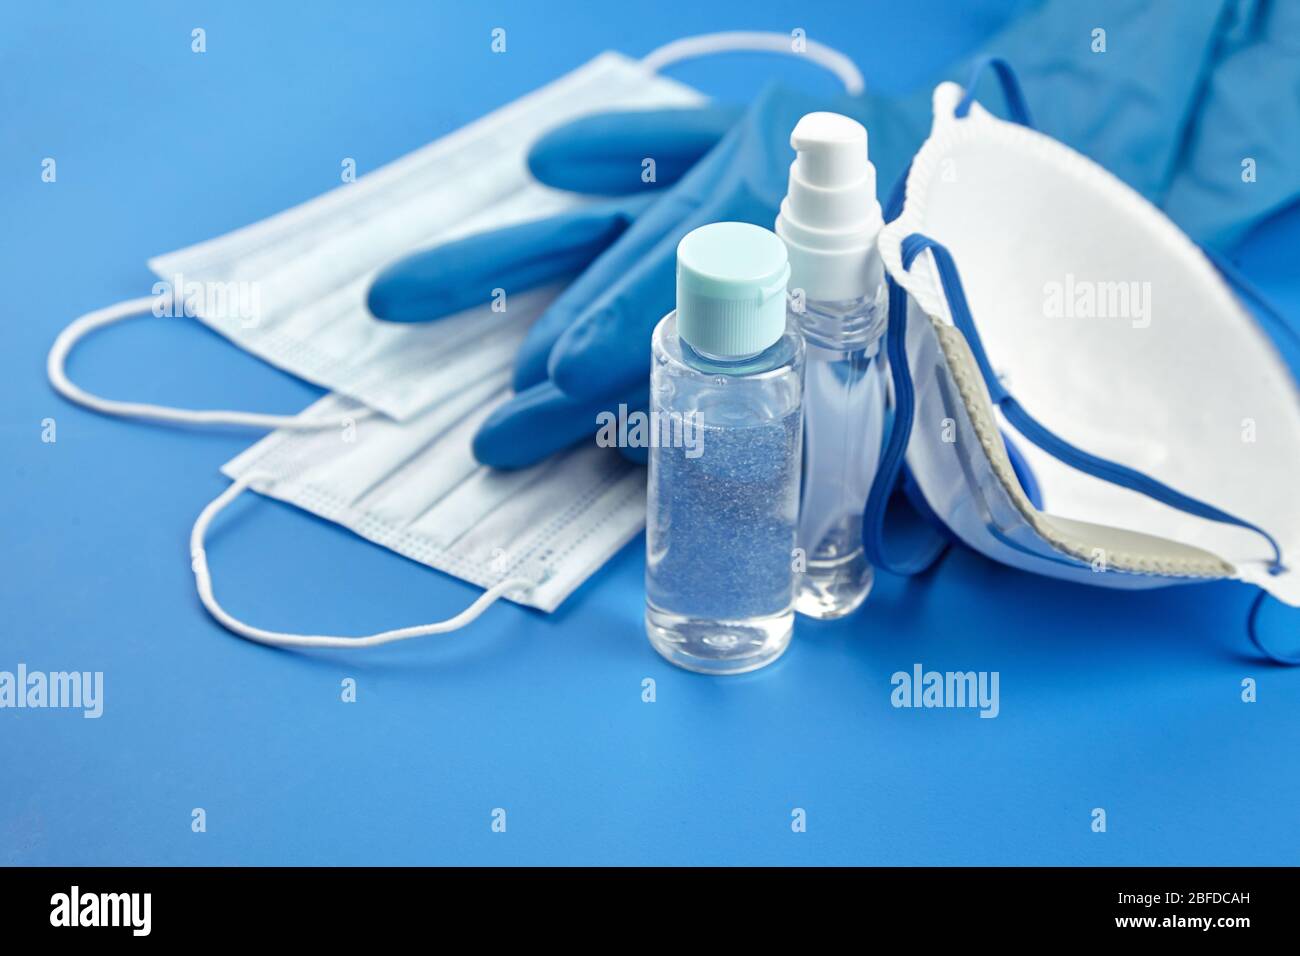 Schutz vor Coronavirus. Flaschen antibakterielle Händedesinfektionsmittel, filternde Gesichtsmaske n95, Anti-Staub atmungsaktiv Einweg chirurgischen Stockfoto